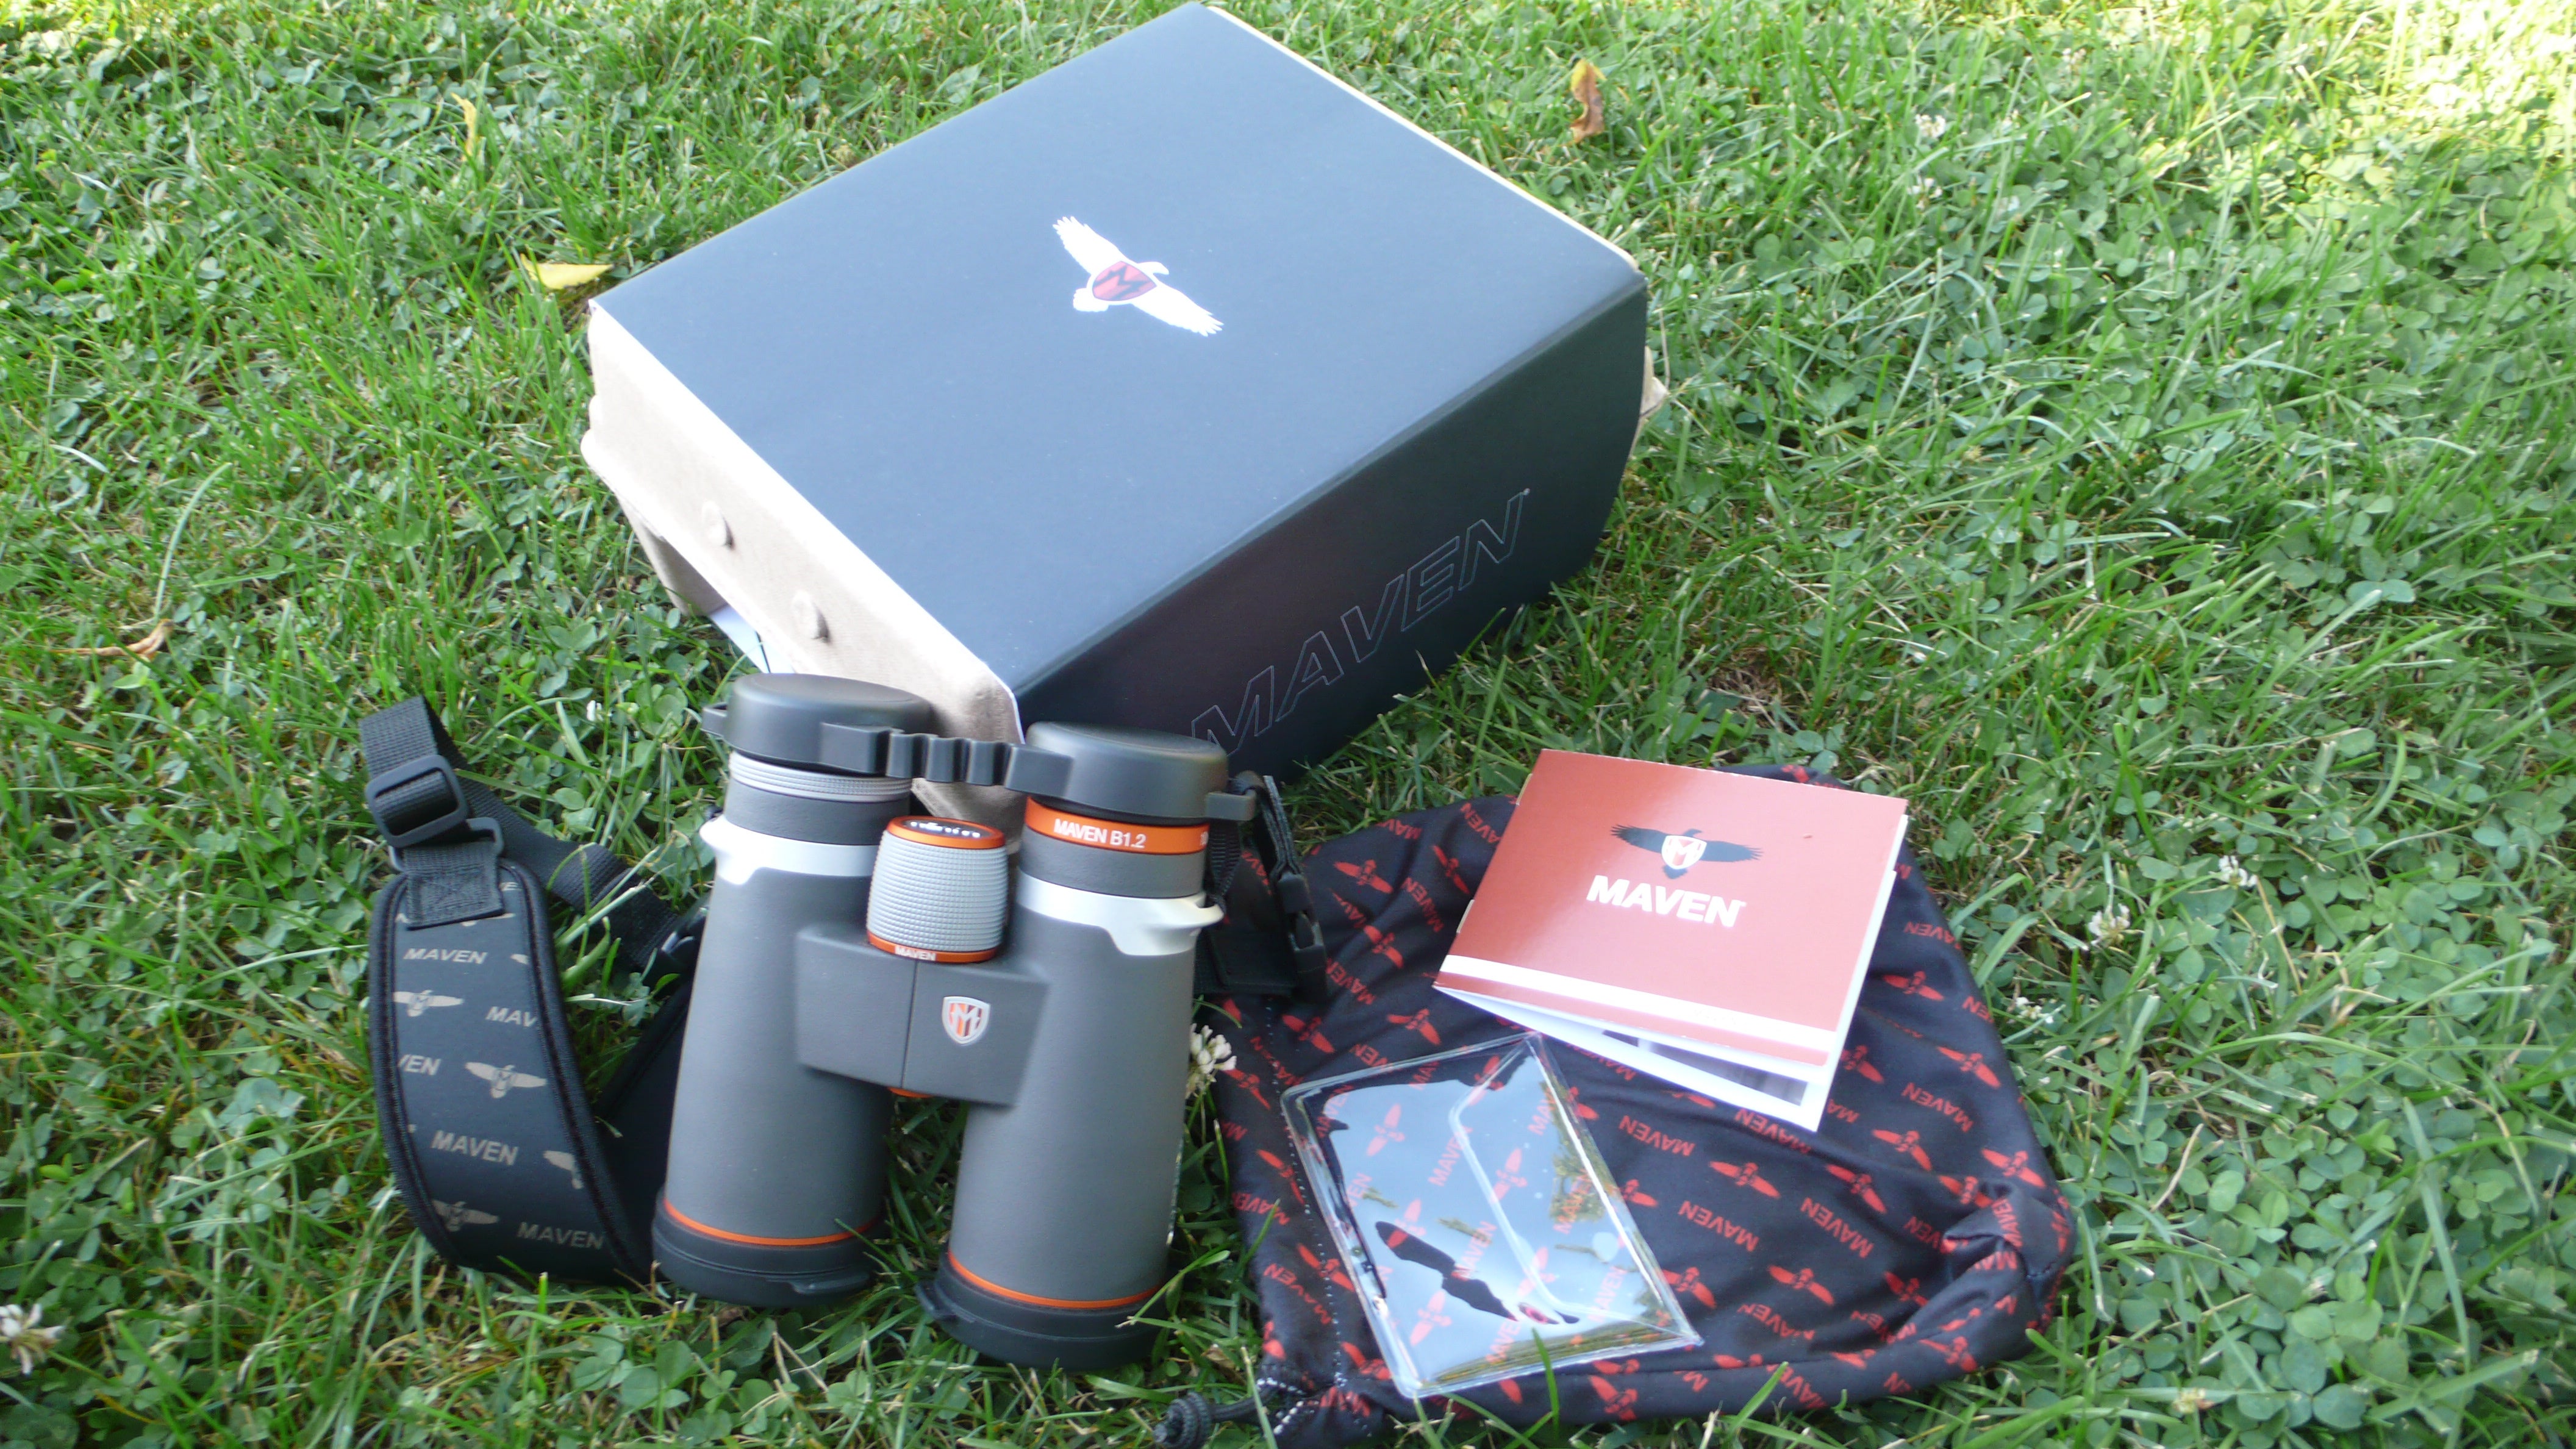 Maven B1.2 Binocular